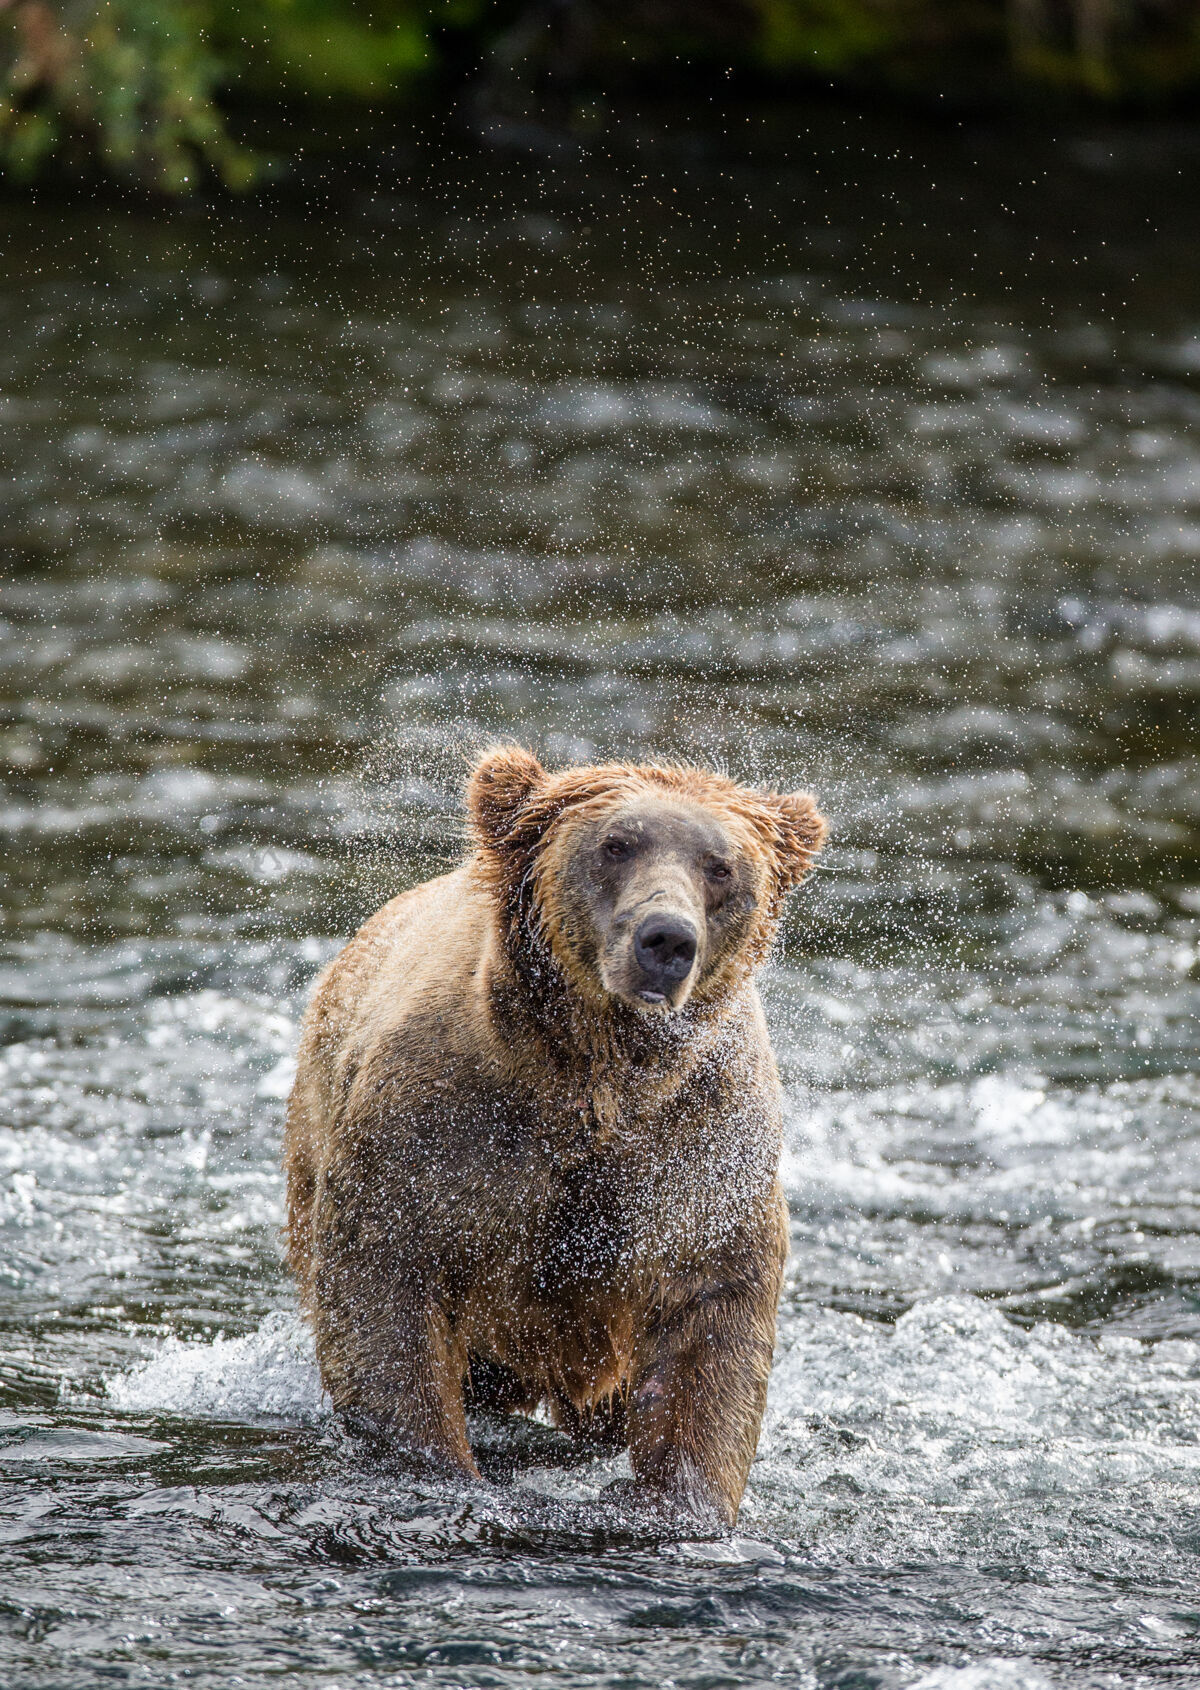 野生动物在美国阿拉斯加州卡迈国家公园 棕熊在被水花包围的水面上摇动布朗哺乳动物国家公园